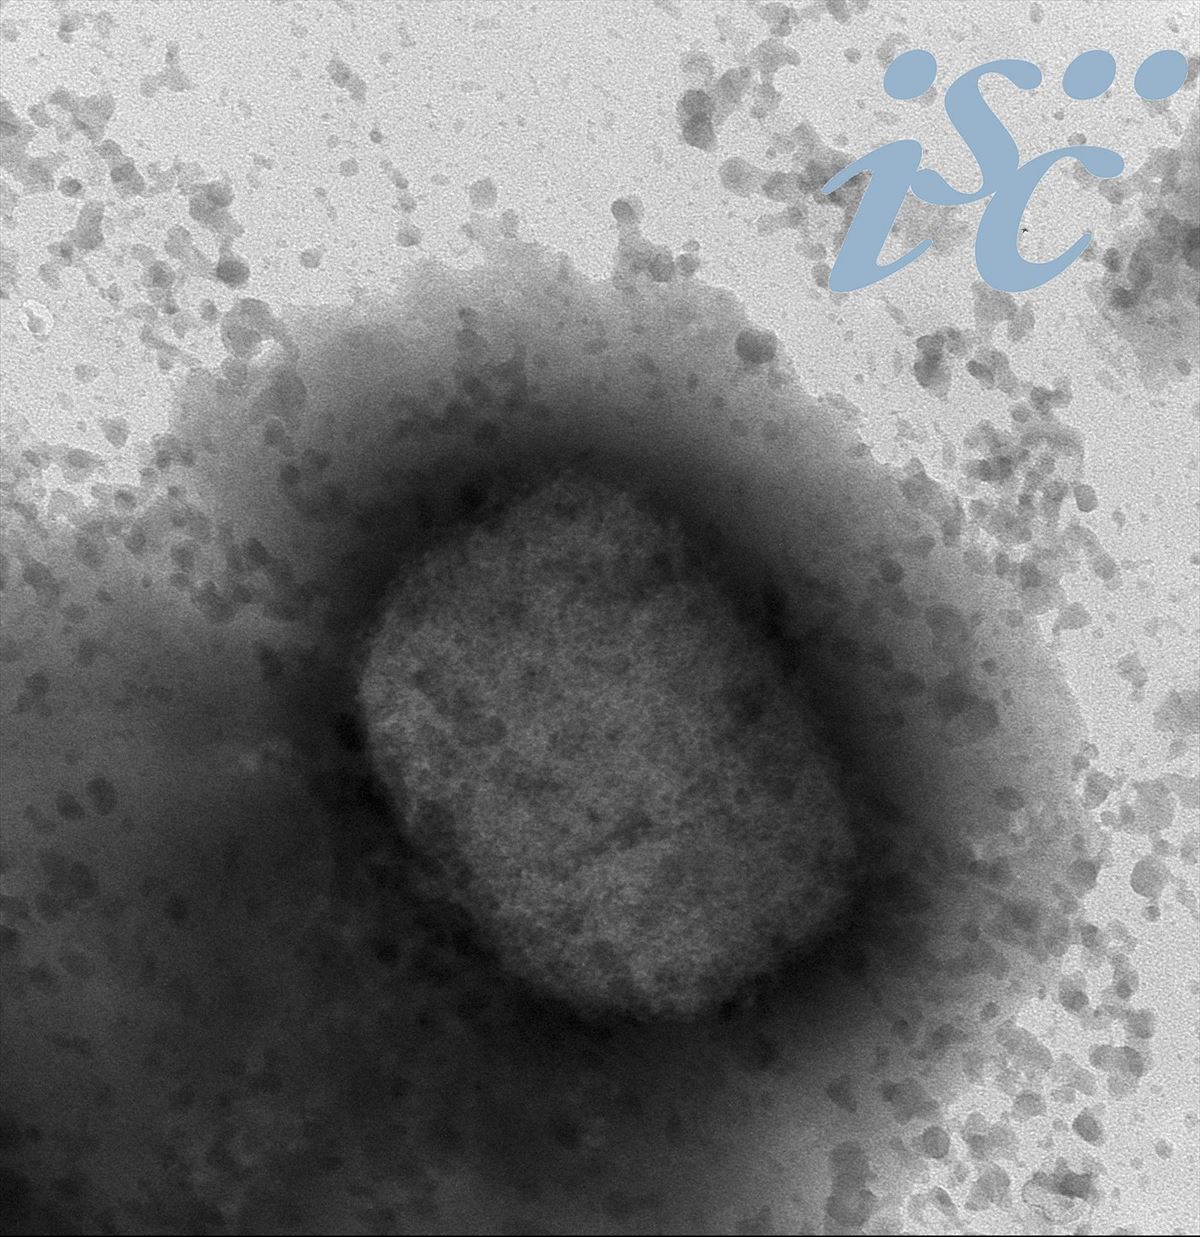 Tximino-baztangaren birusa mikroskopio batean. Argazkia: EFE